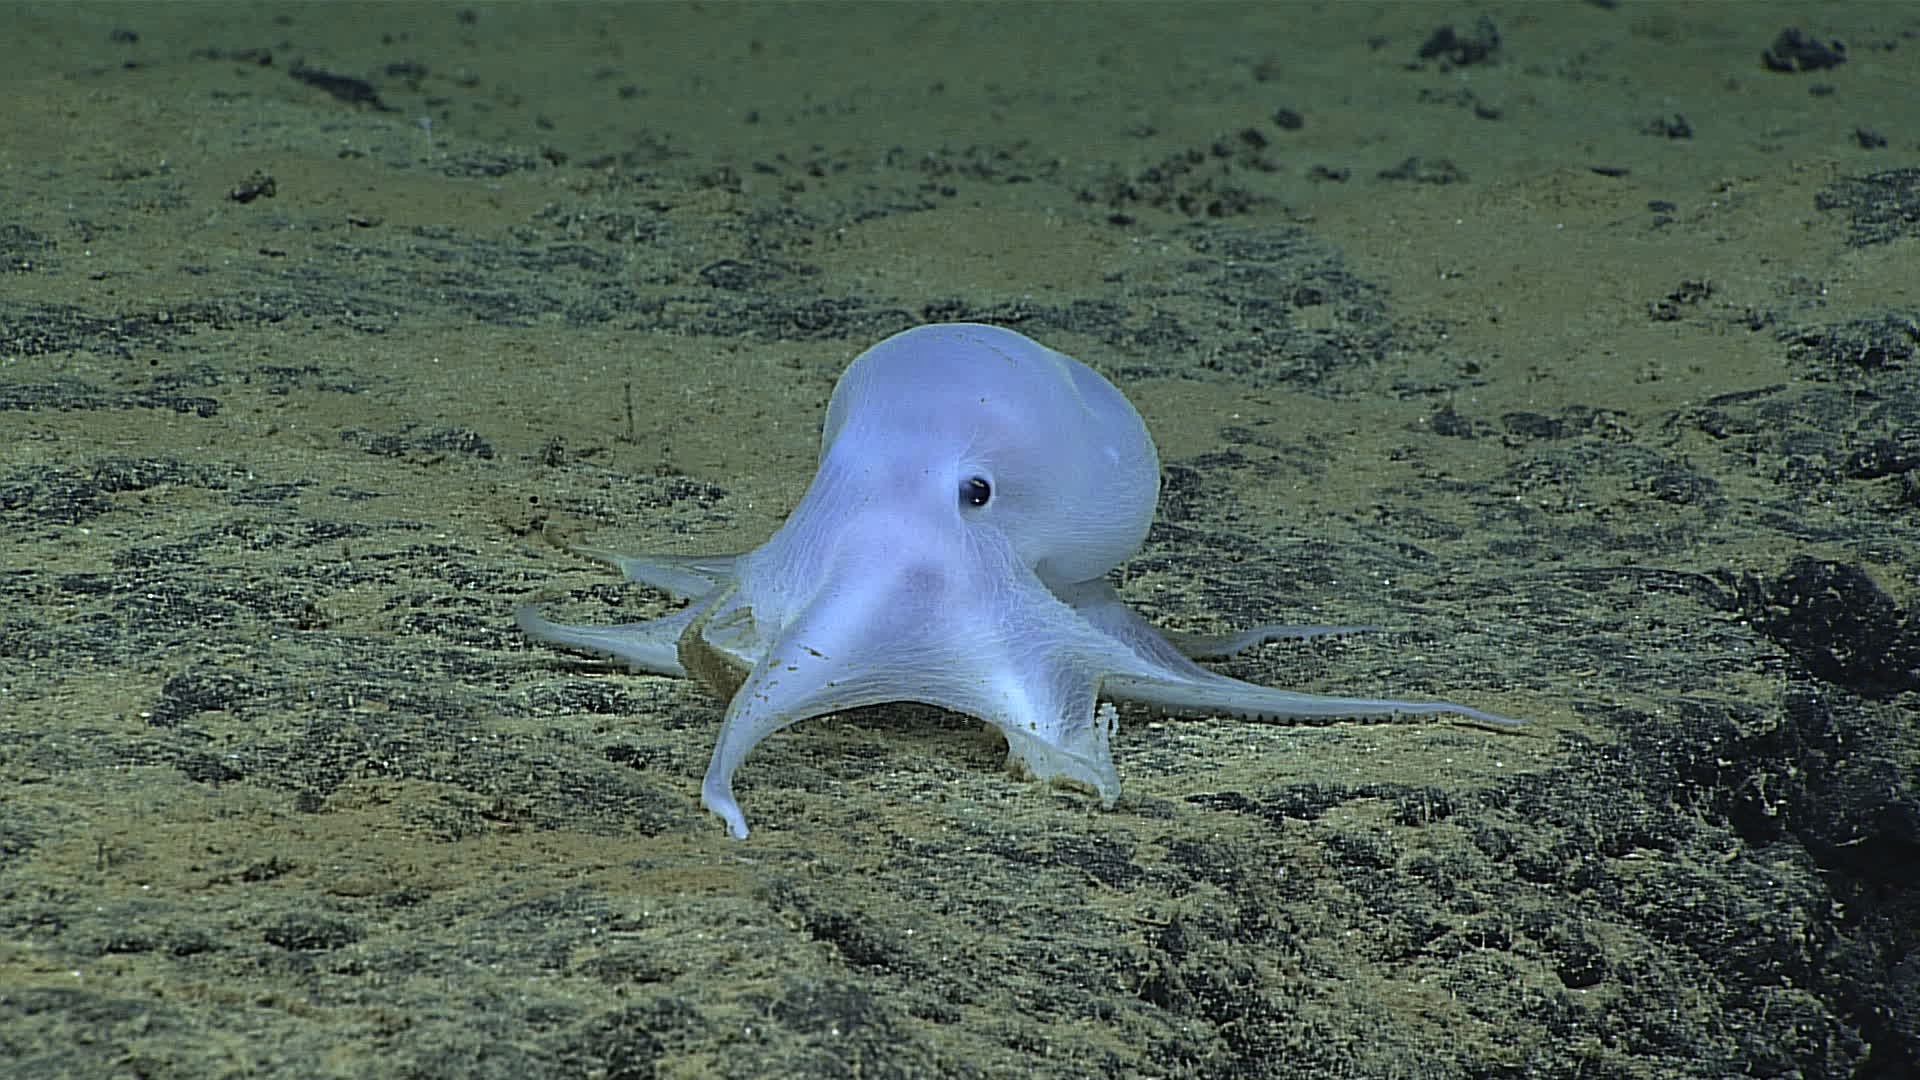 Der kleine geisterhafte Oktopus "Casper" wurde in über 4000 Metern Tiefe gefunden und nach der berühmten Comicfigur benannt. NOAA Office of Ocean Exploration and Research